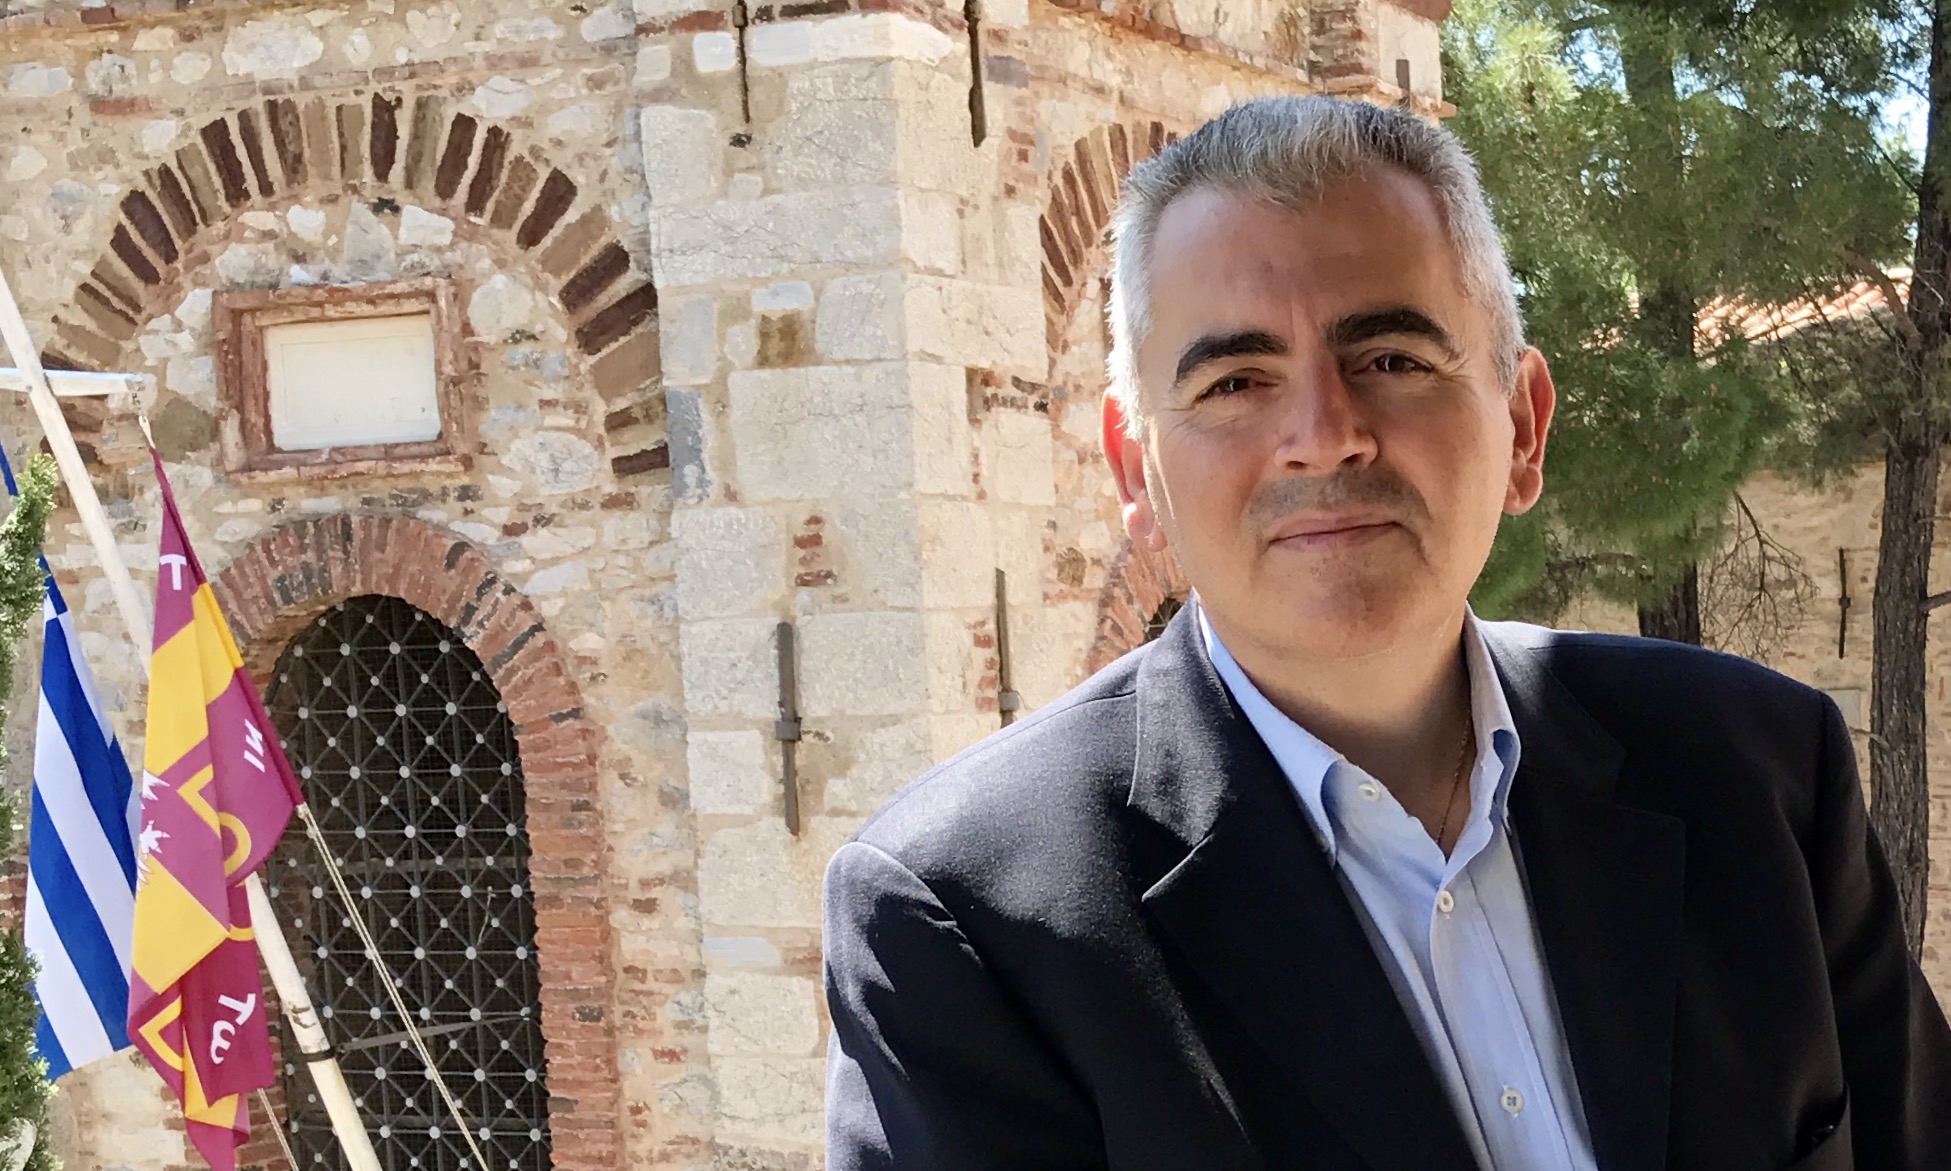  Χαρακόπουλος: Η διεθνής κοινότητα να σταματήσει την τουρκική βαρβαρότητα